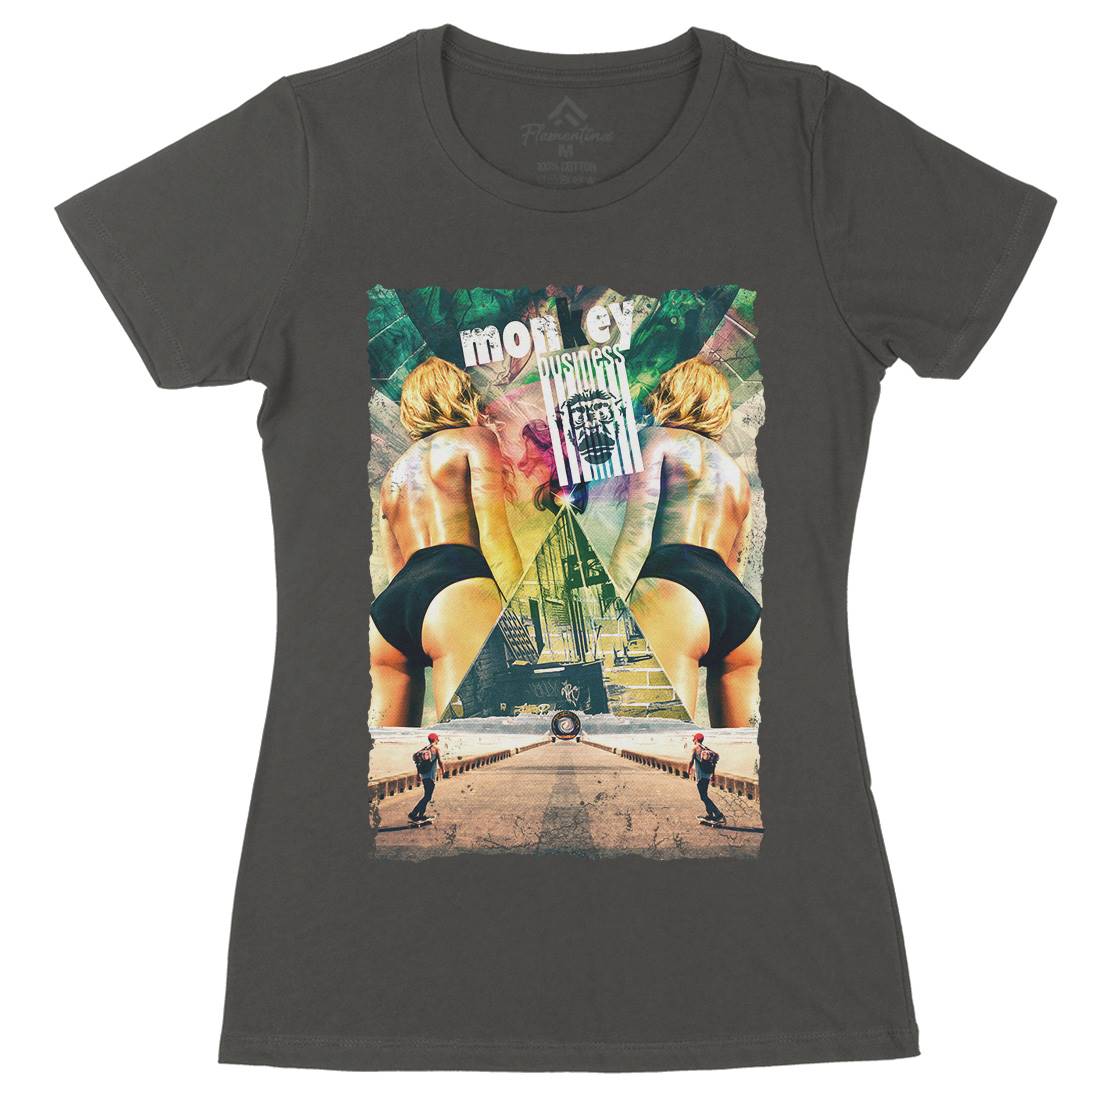 Monkey Business Womens Organic Crew Neck T-Shirt Work A880